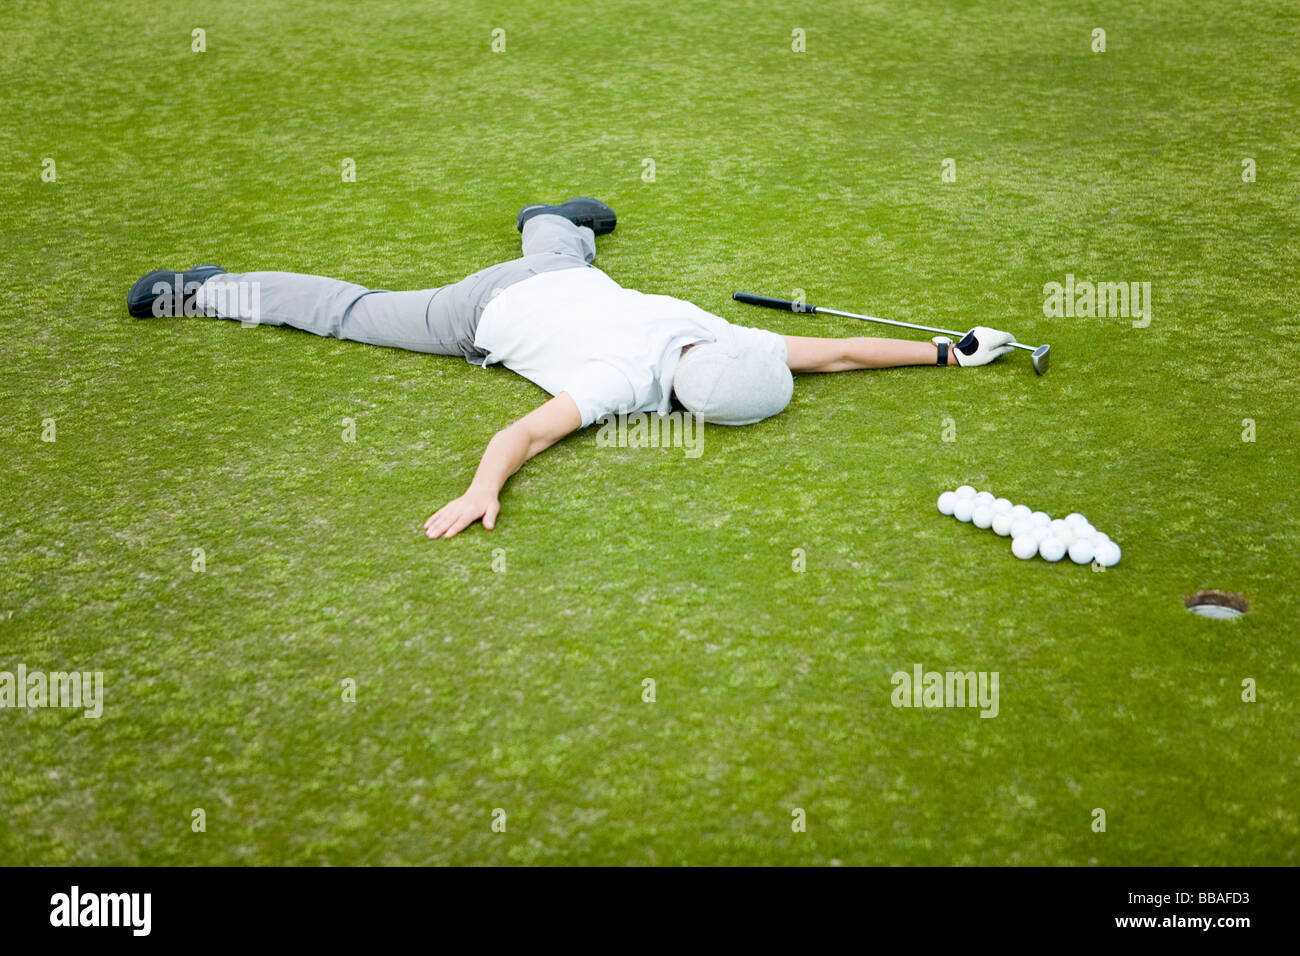 Un golfeur allongé sur un green derrière une flèche de balles de golf Banque D'Images